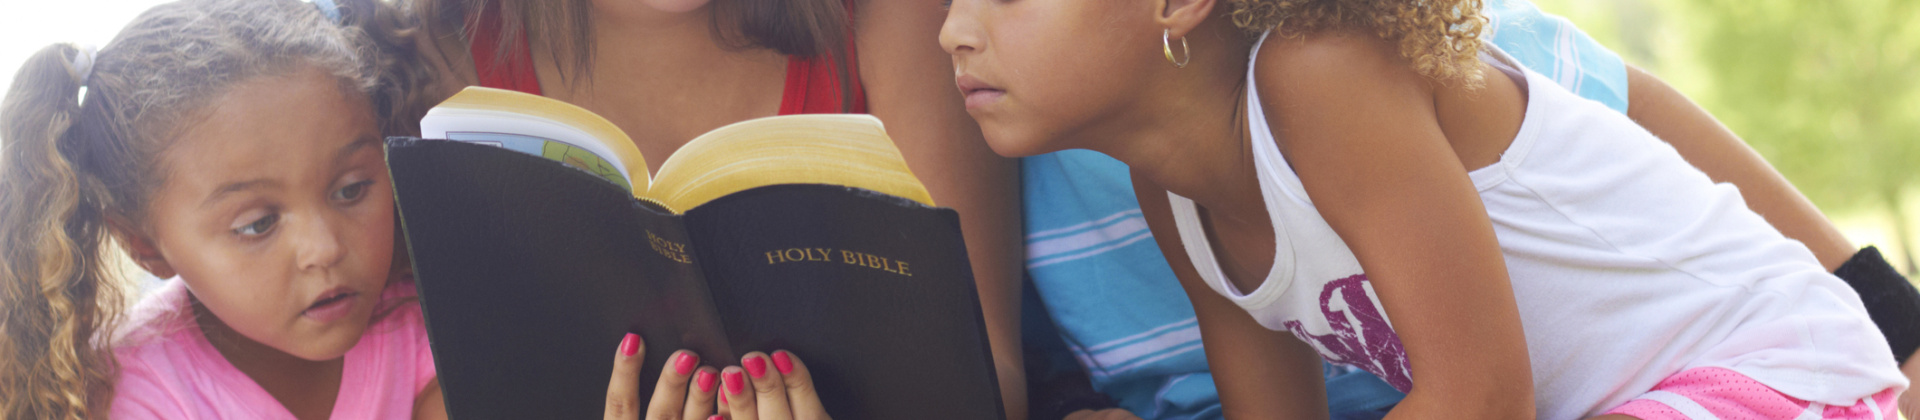 kids & Bible